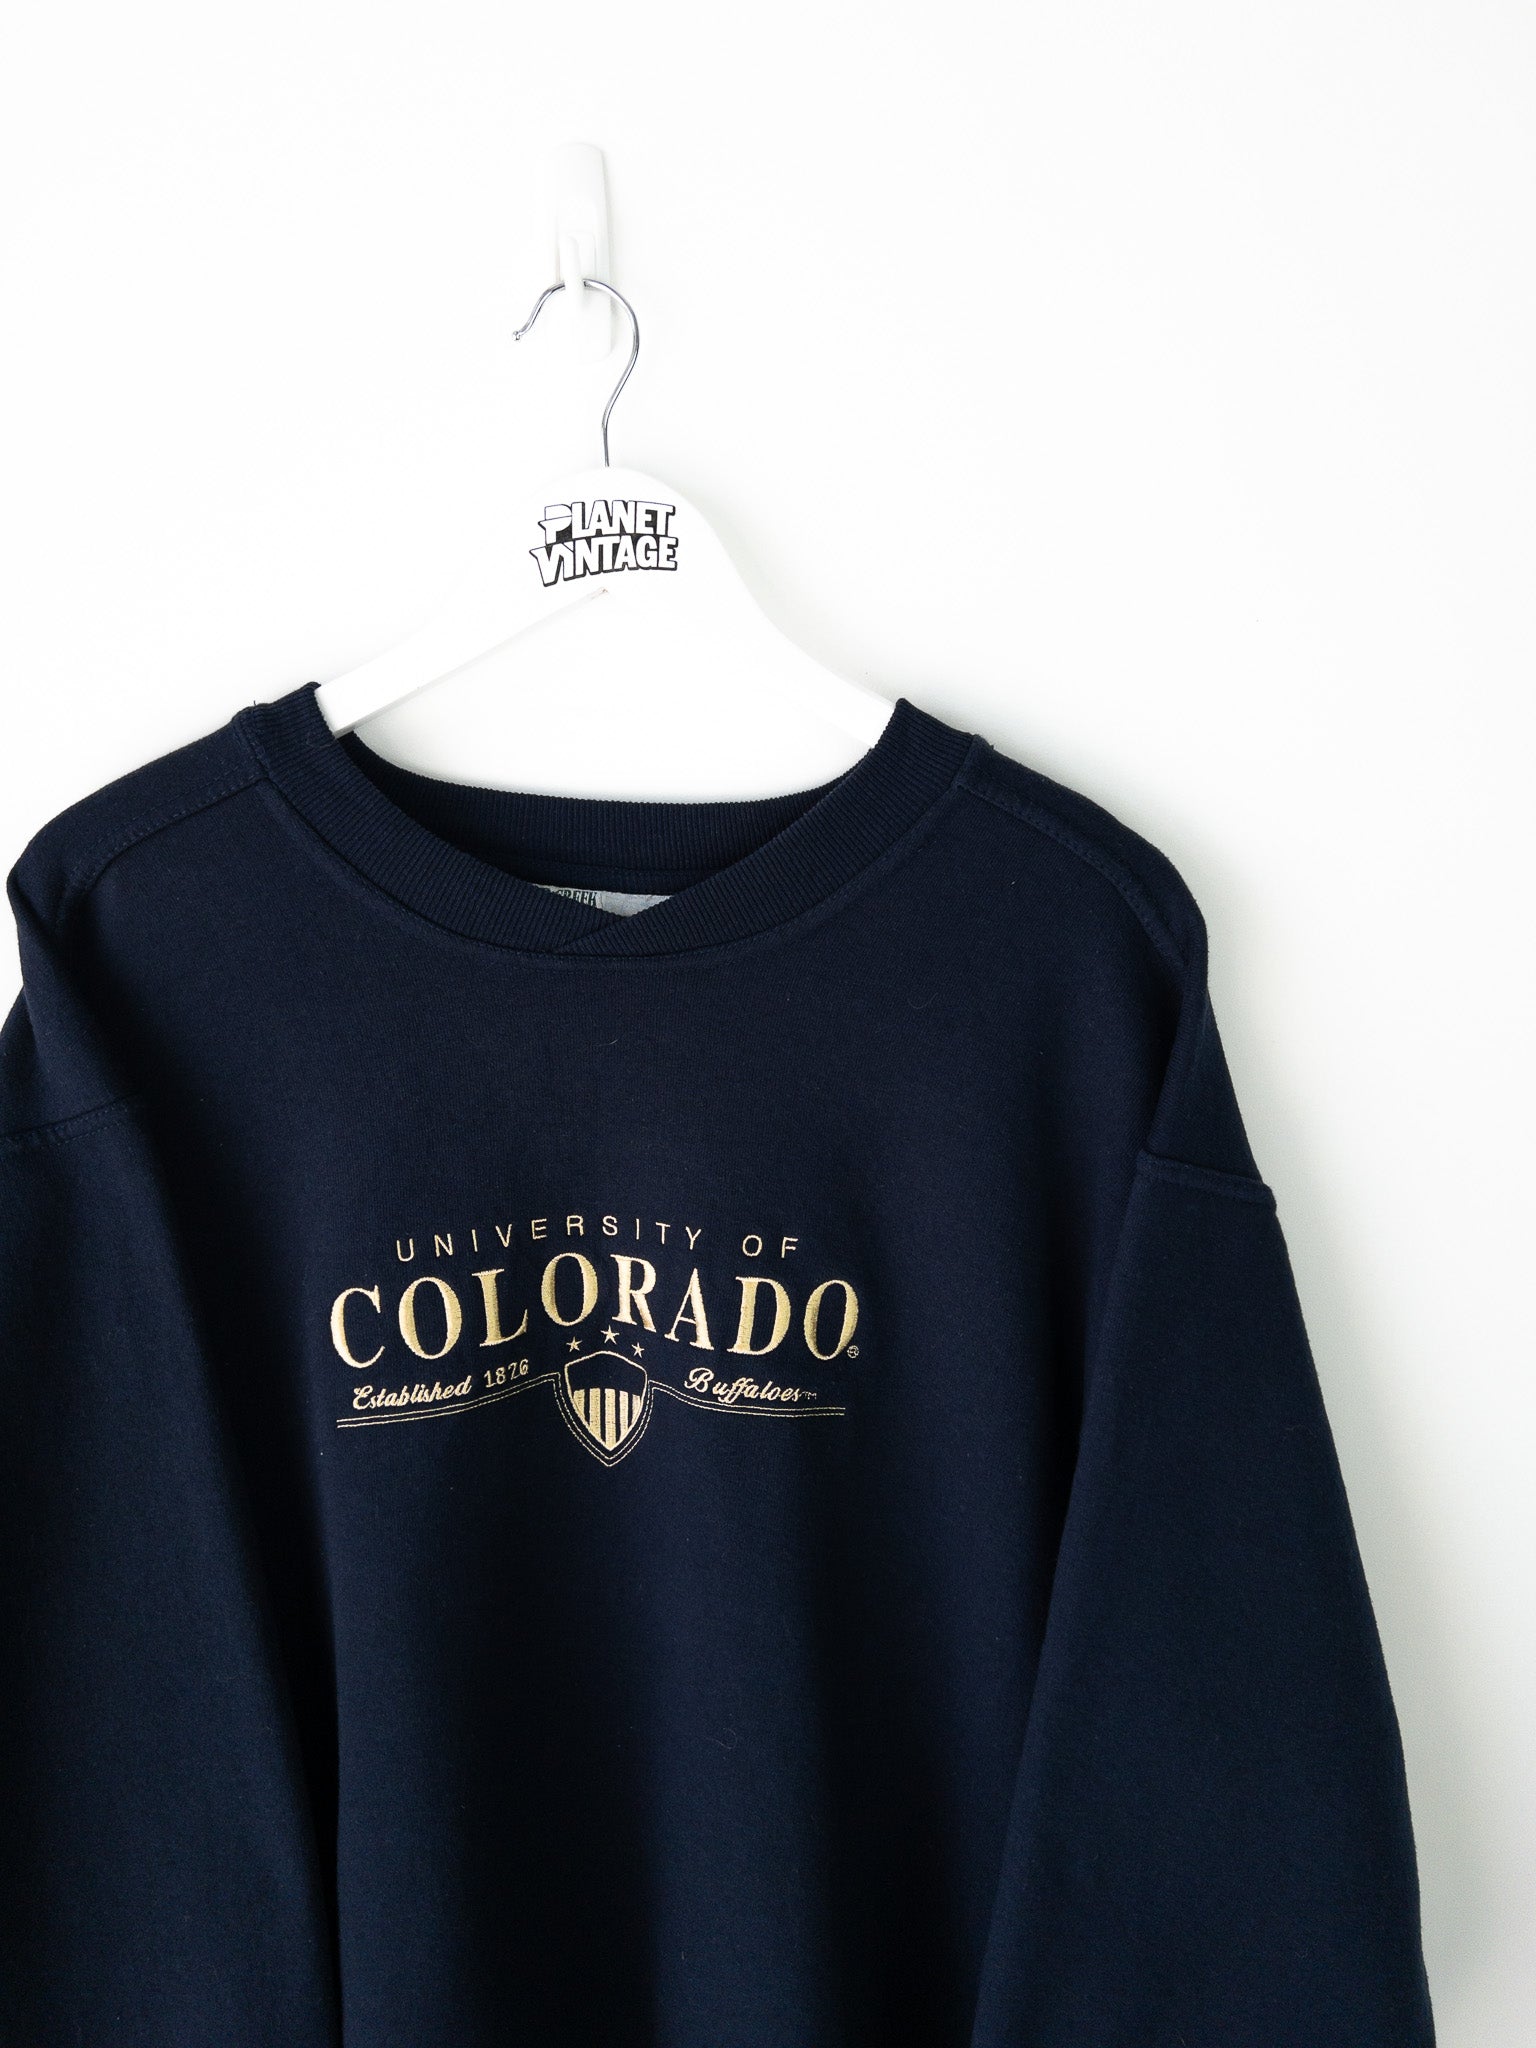 Vintage University of Colorado Sweatshirt (XL)